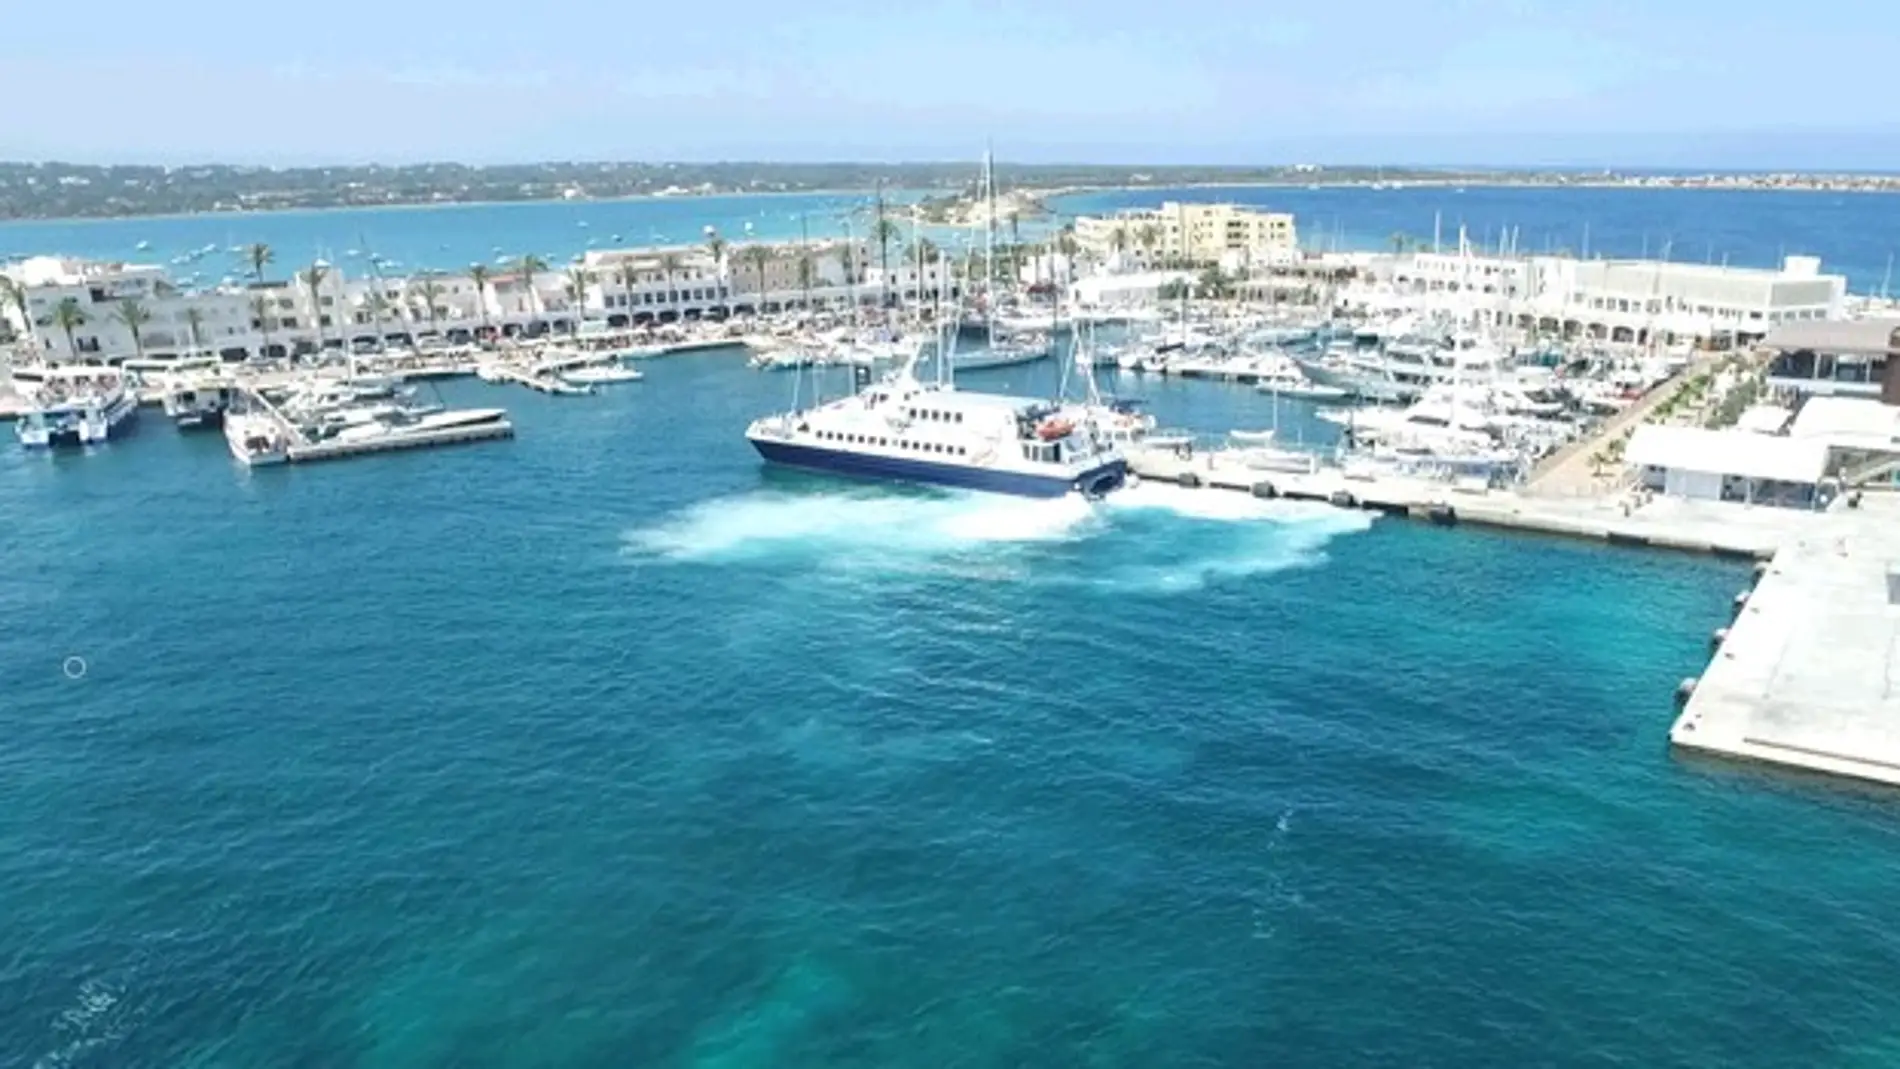 Autoridad Portuaria intensificará los controles para el cumplimiento de la normativa en el puerto de la Savina Formentera